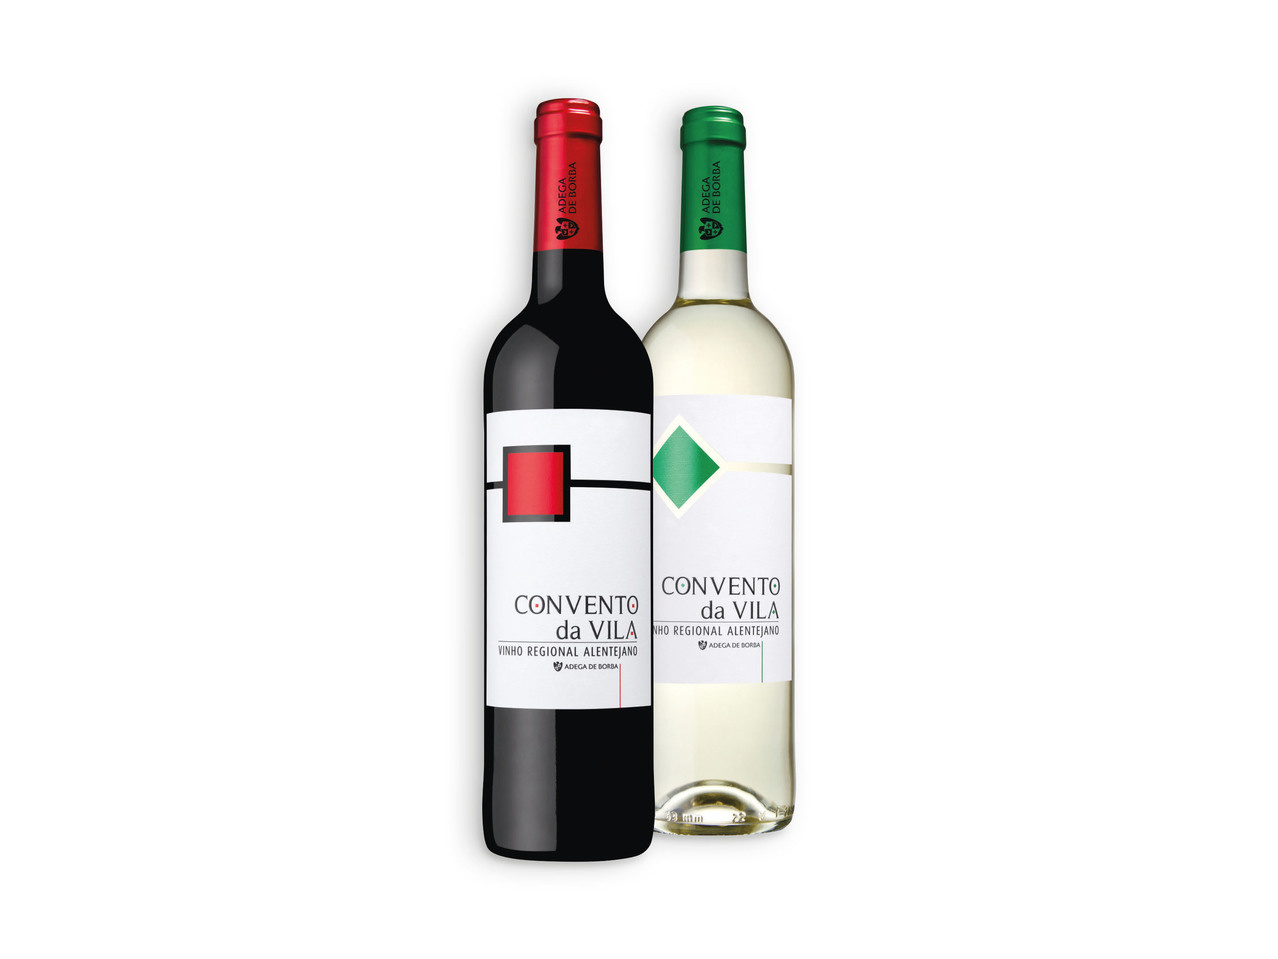 CONVENTO DA VILA(R) Vinho Tinto / Branco Regional Alentejano